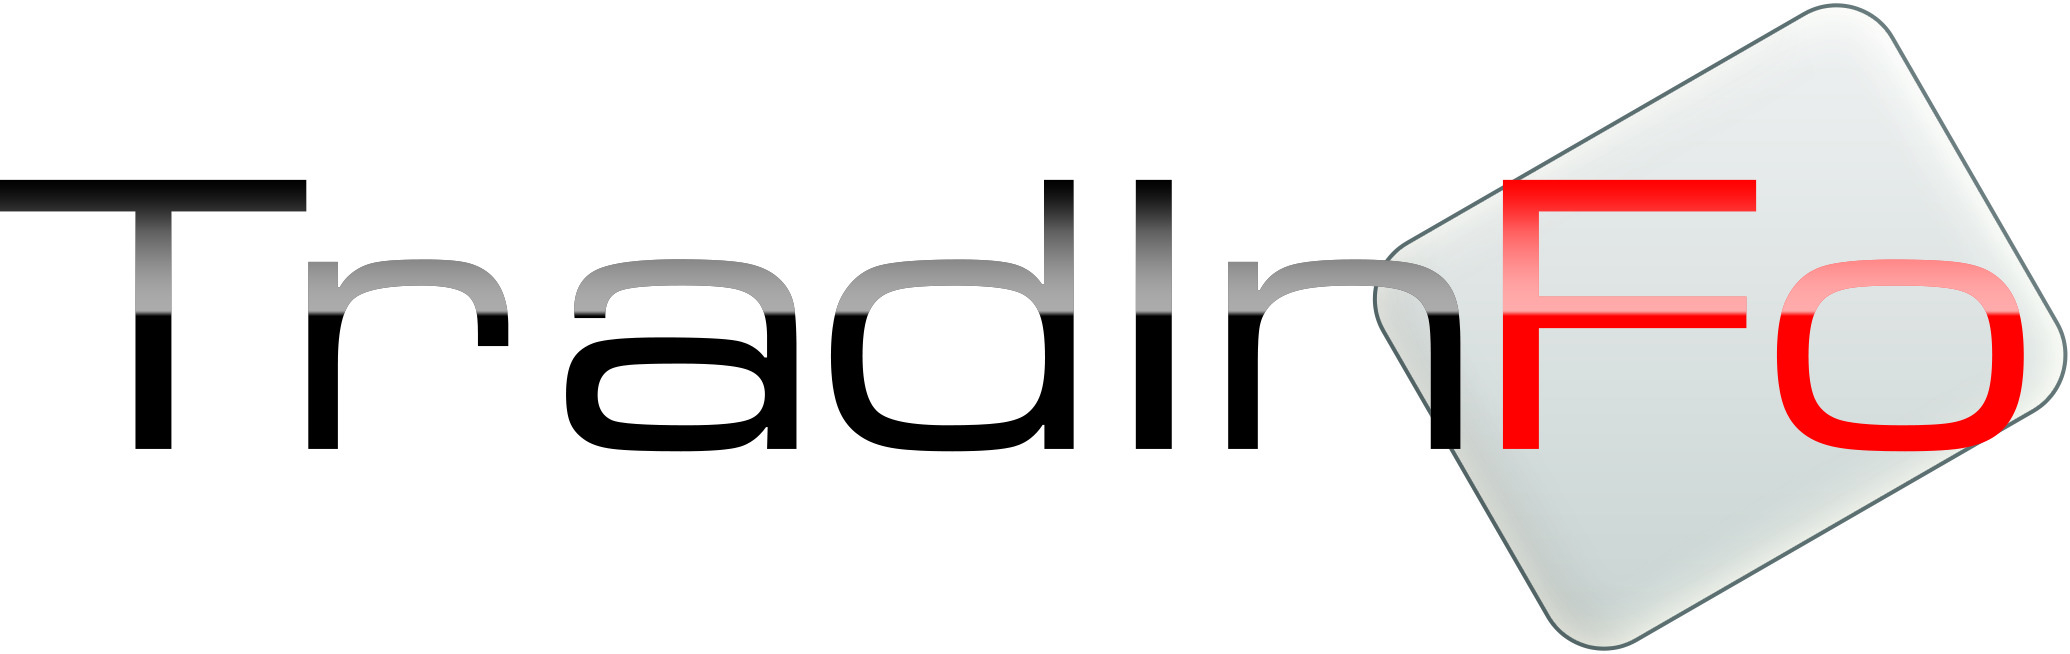 TradInFo_logotipo-vett-esec